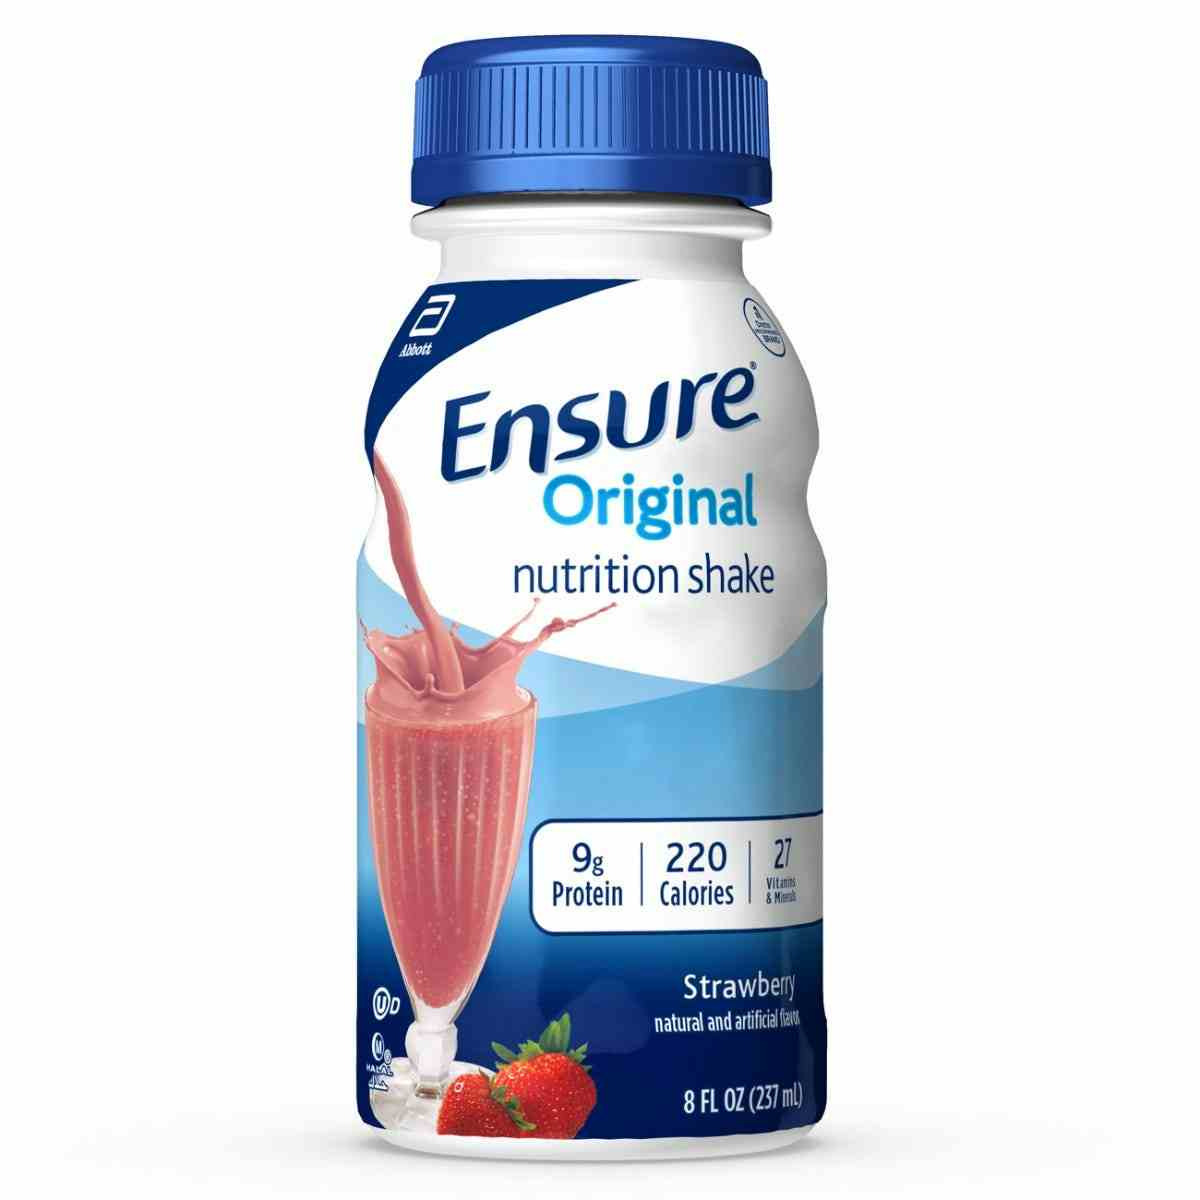  Ensure Original Nutritional Shake, 8 oz., Strawberry